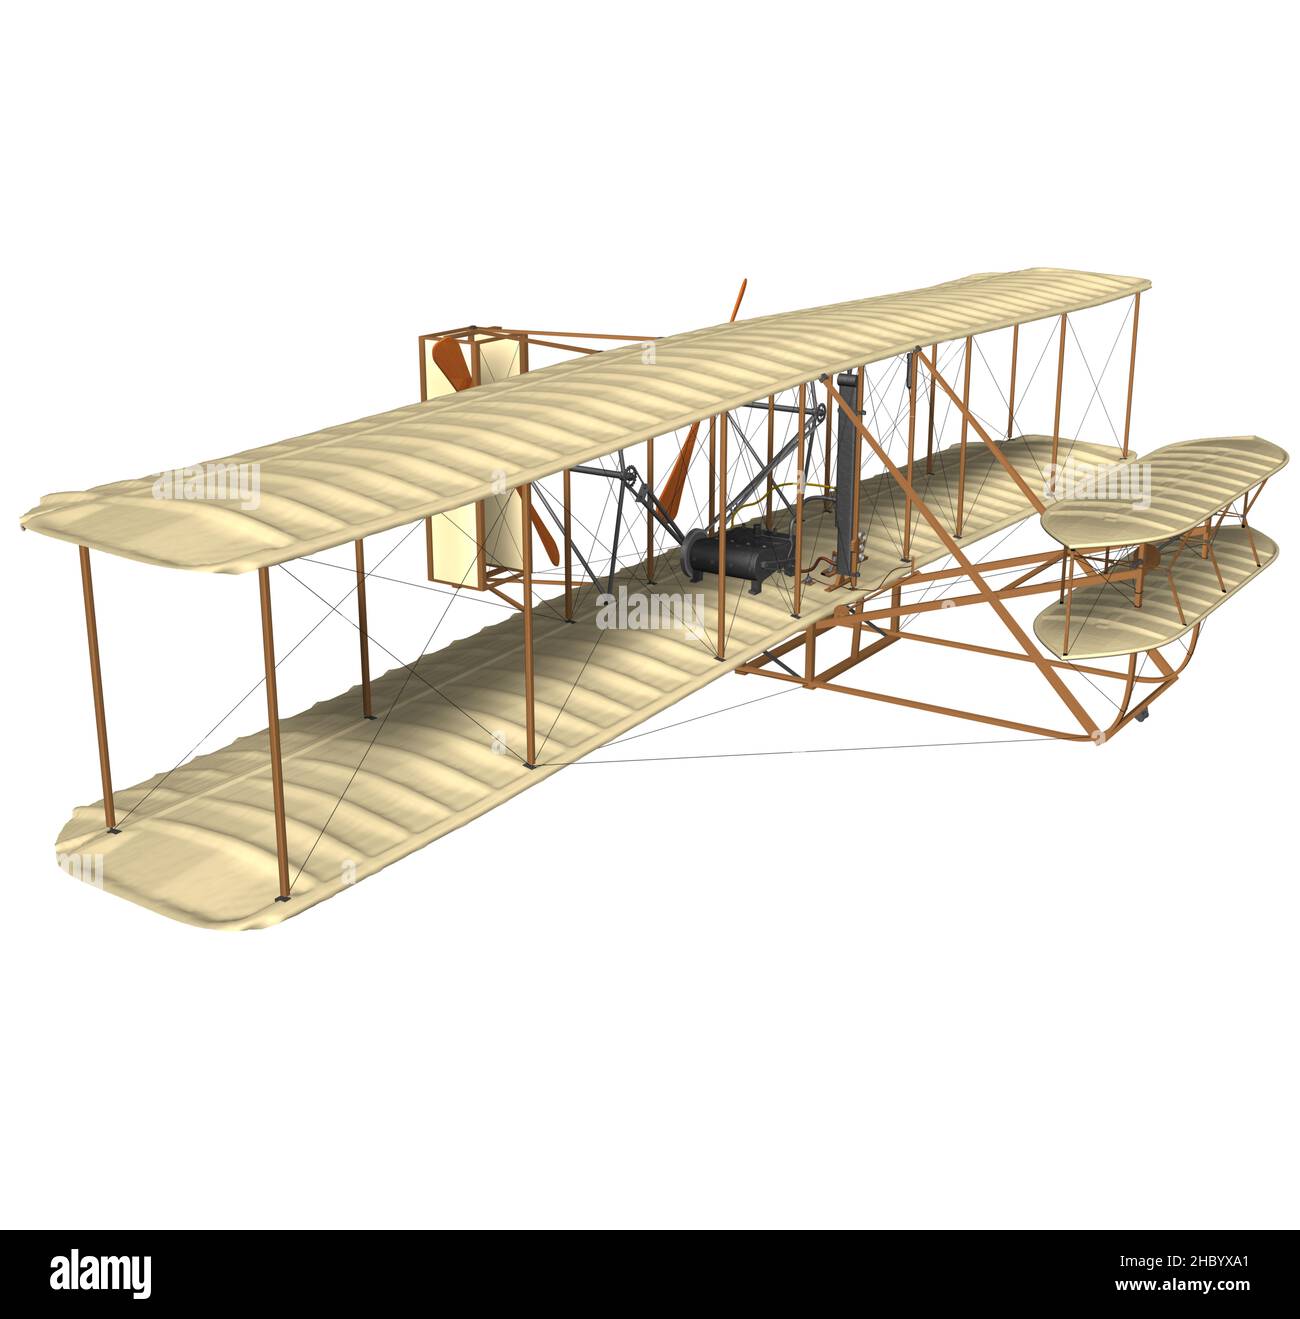 3D rappresentazione dell'illustrazione del primo aeroplano (Flyer i) costruito e testato da Orville e Wilbur Wright il 17 dicembre del 1903. Foto Stock